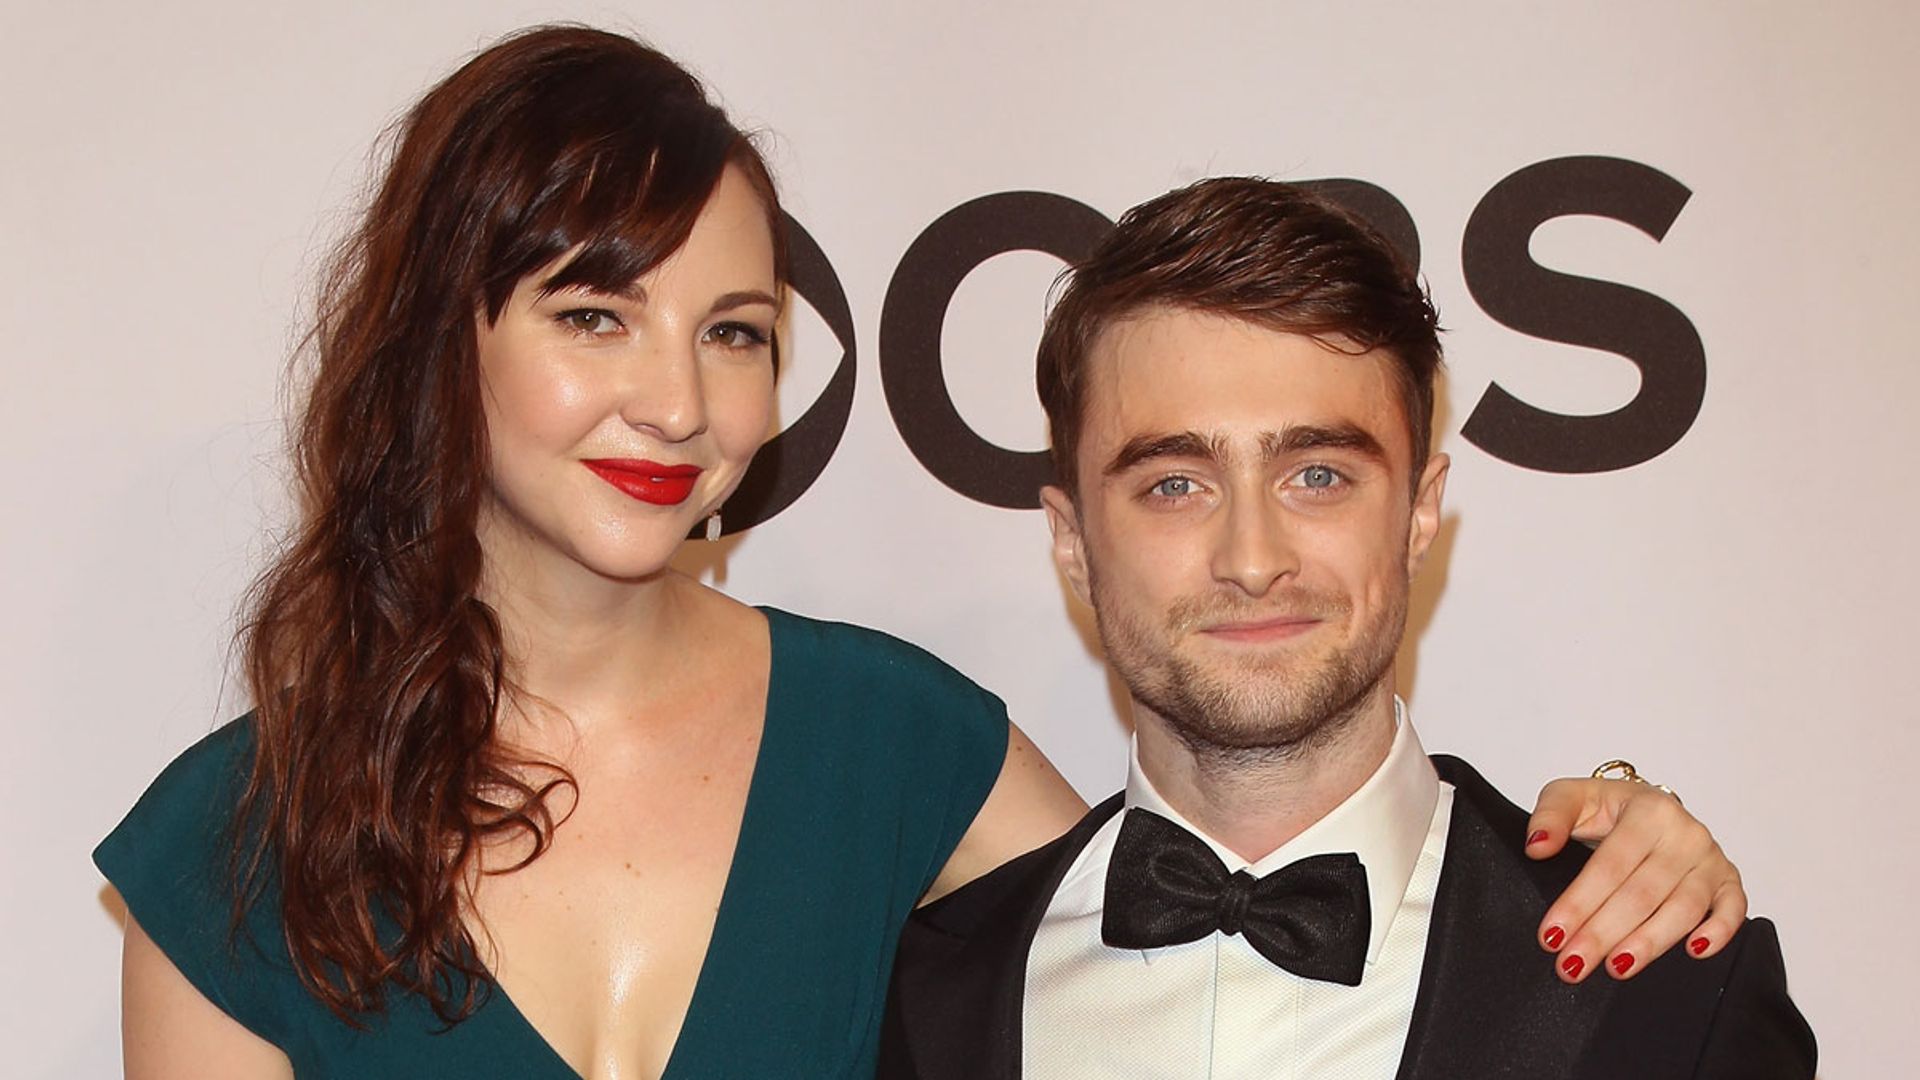 Who is Daniel Radcliffe's girlfriend, Erin Darke?